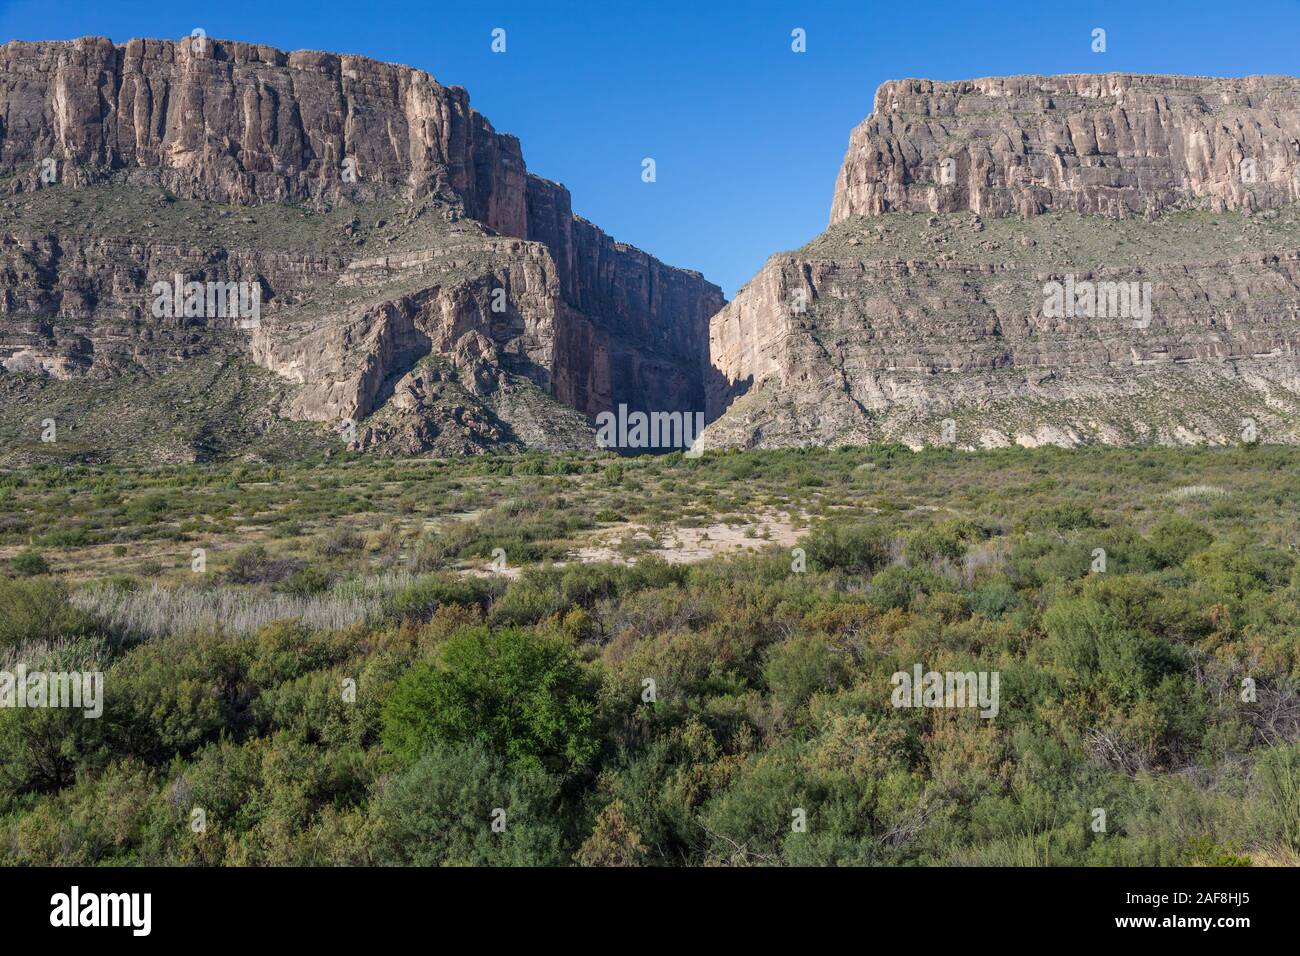 La sortie de Santa Elena Canyon, le parc national Big Bend, Texas. Le Mexique sur la gauche, USA sur la droite. Banque D'Images